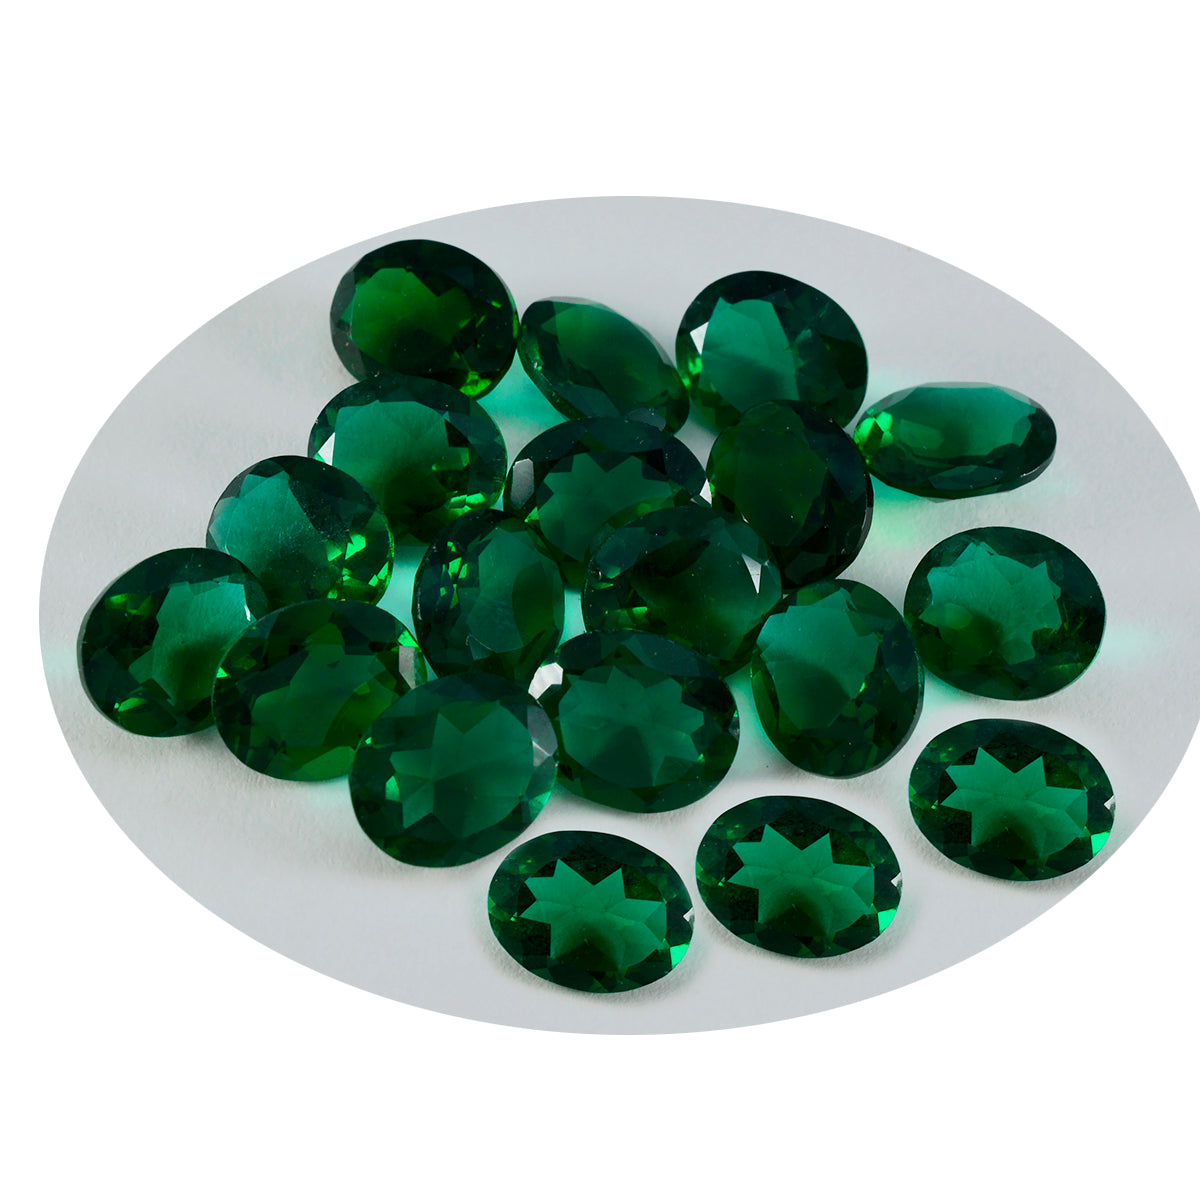 riyogems 1 pezzo di smeraldo verde cz sfaccettato 6x8 mm di forma ovale, pietra preziosa sfusa di ottima qualità